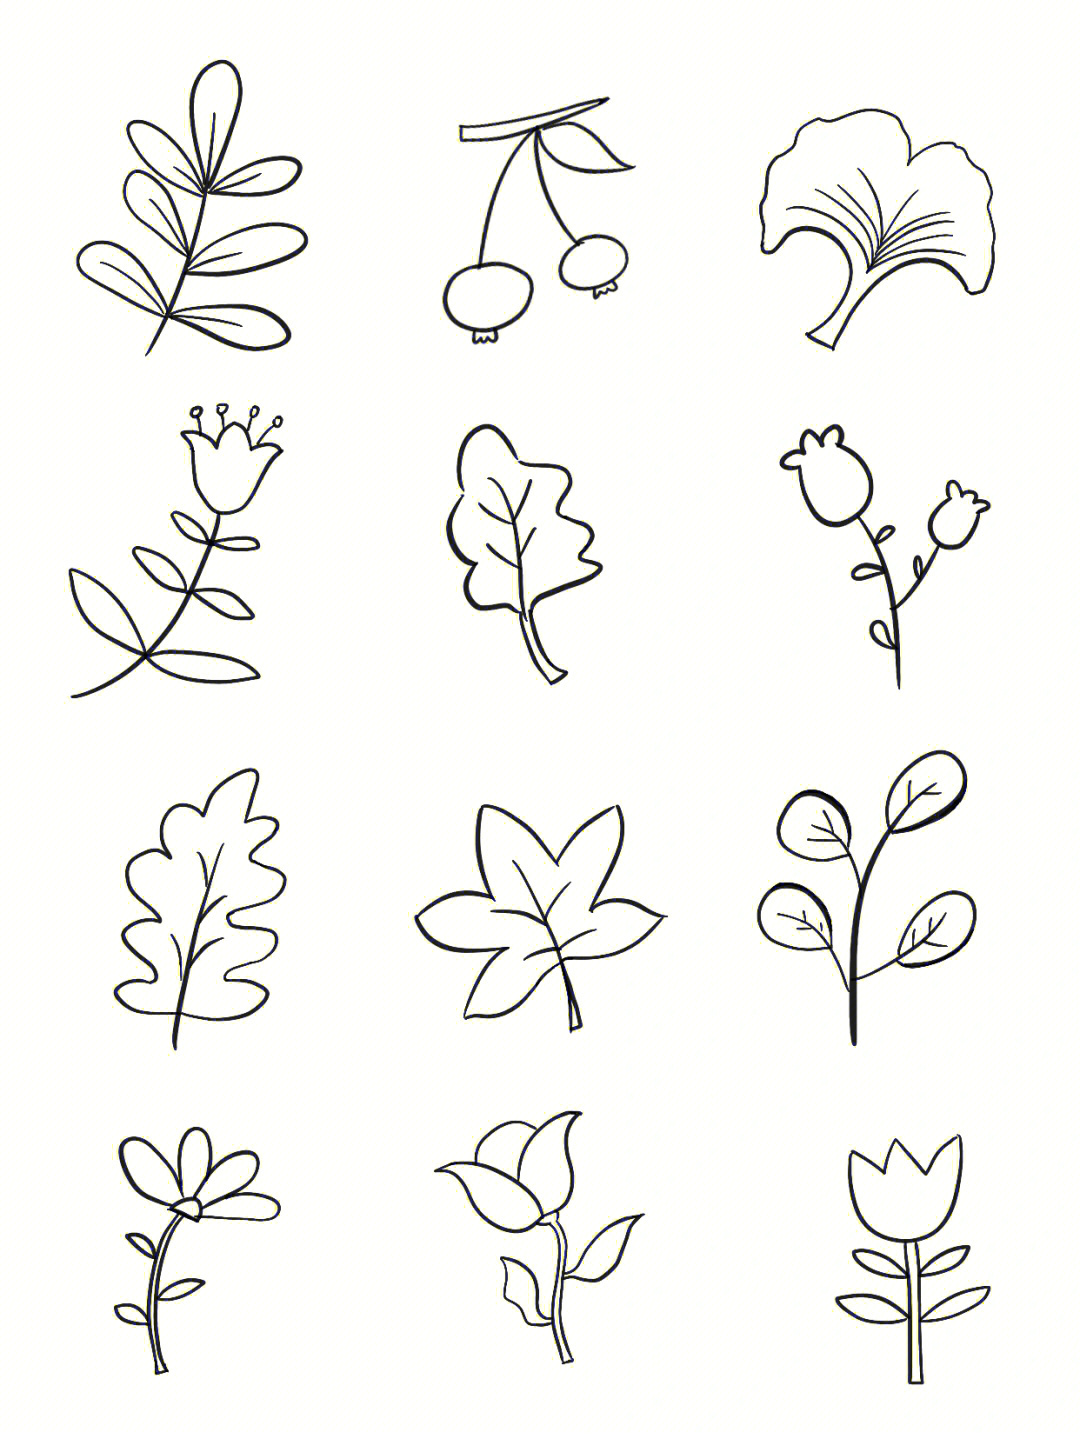 突然想画100个不同的元素,就从最简单的植物花卉简笔画开始吧可以当成